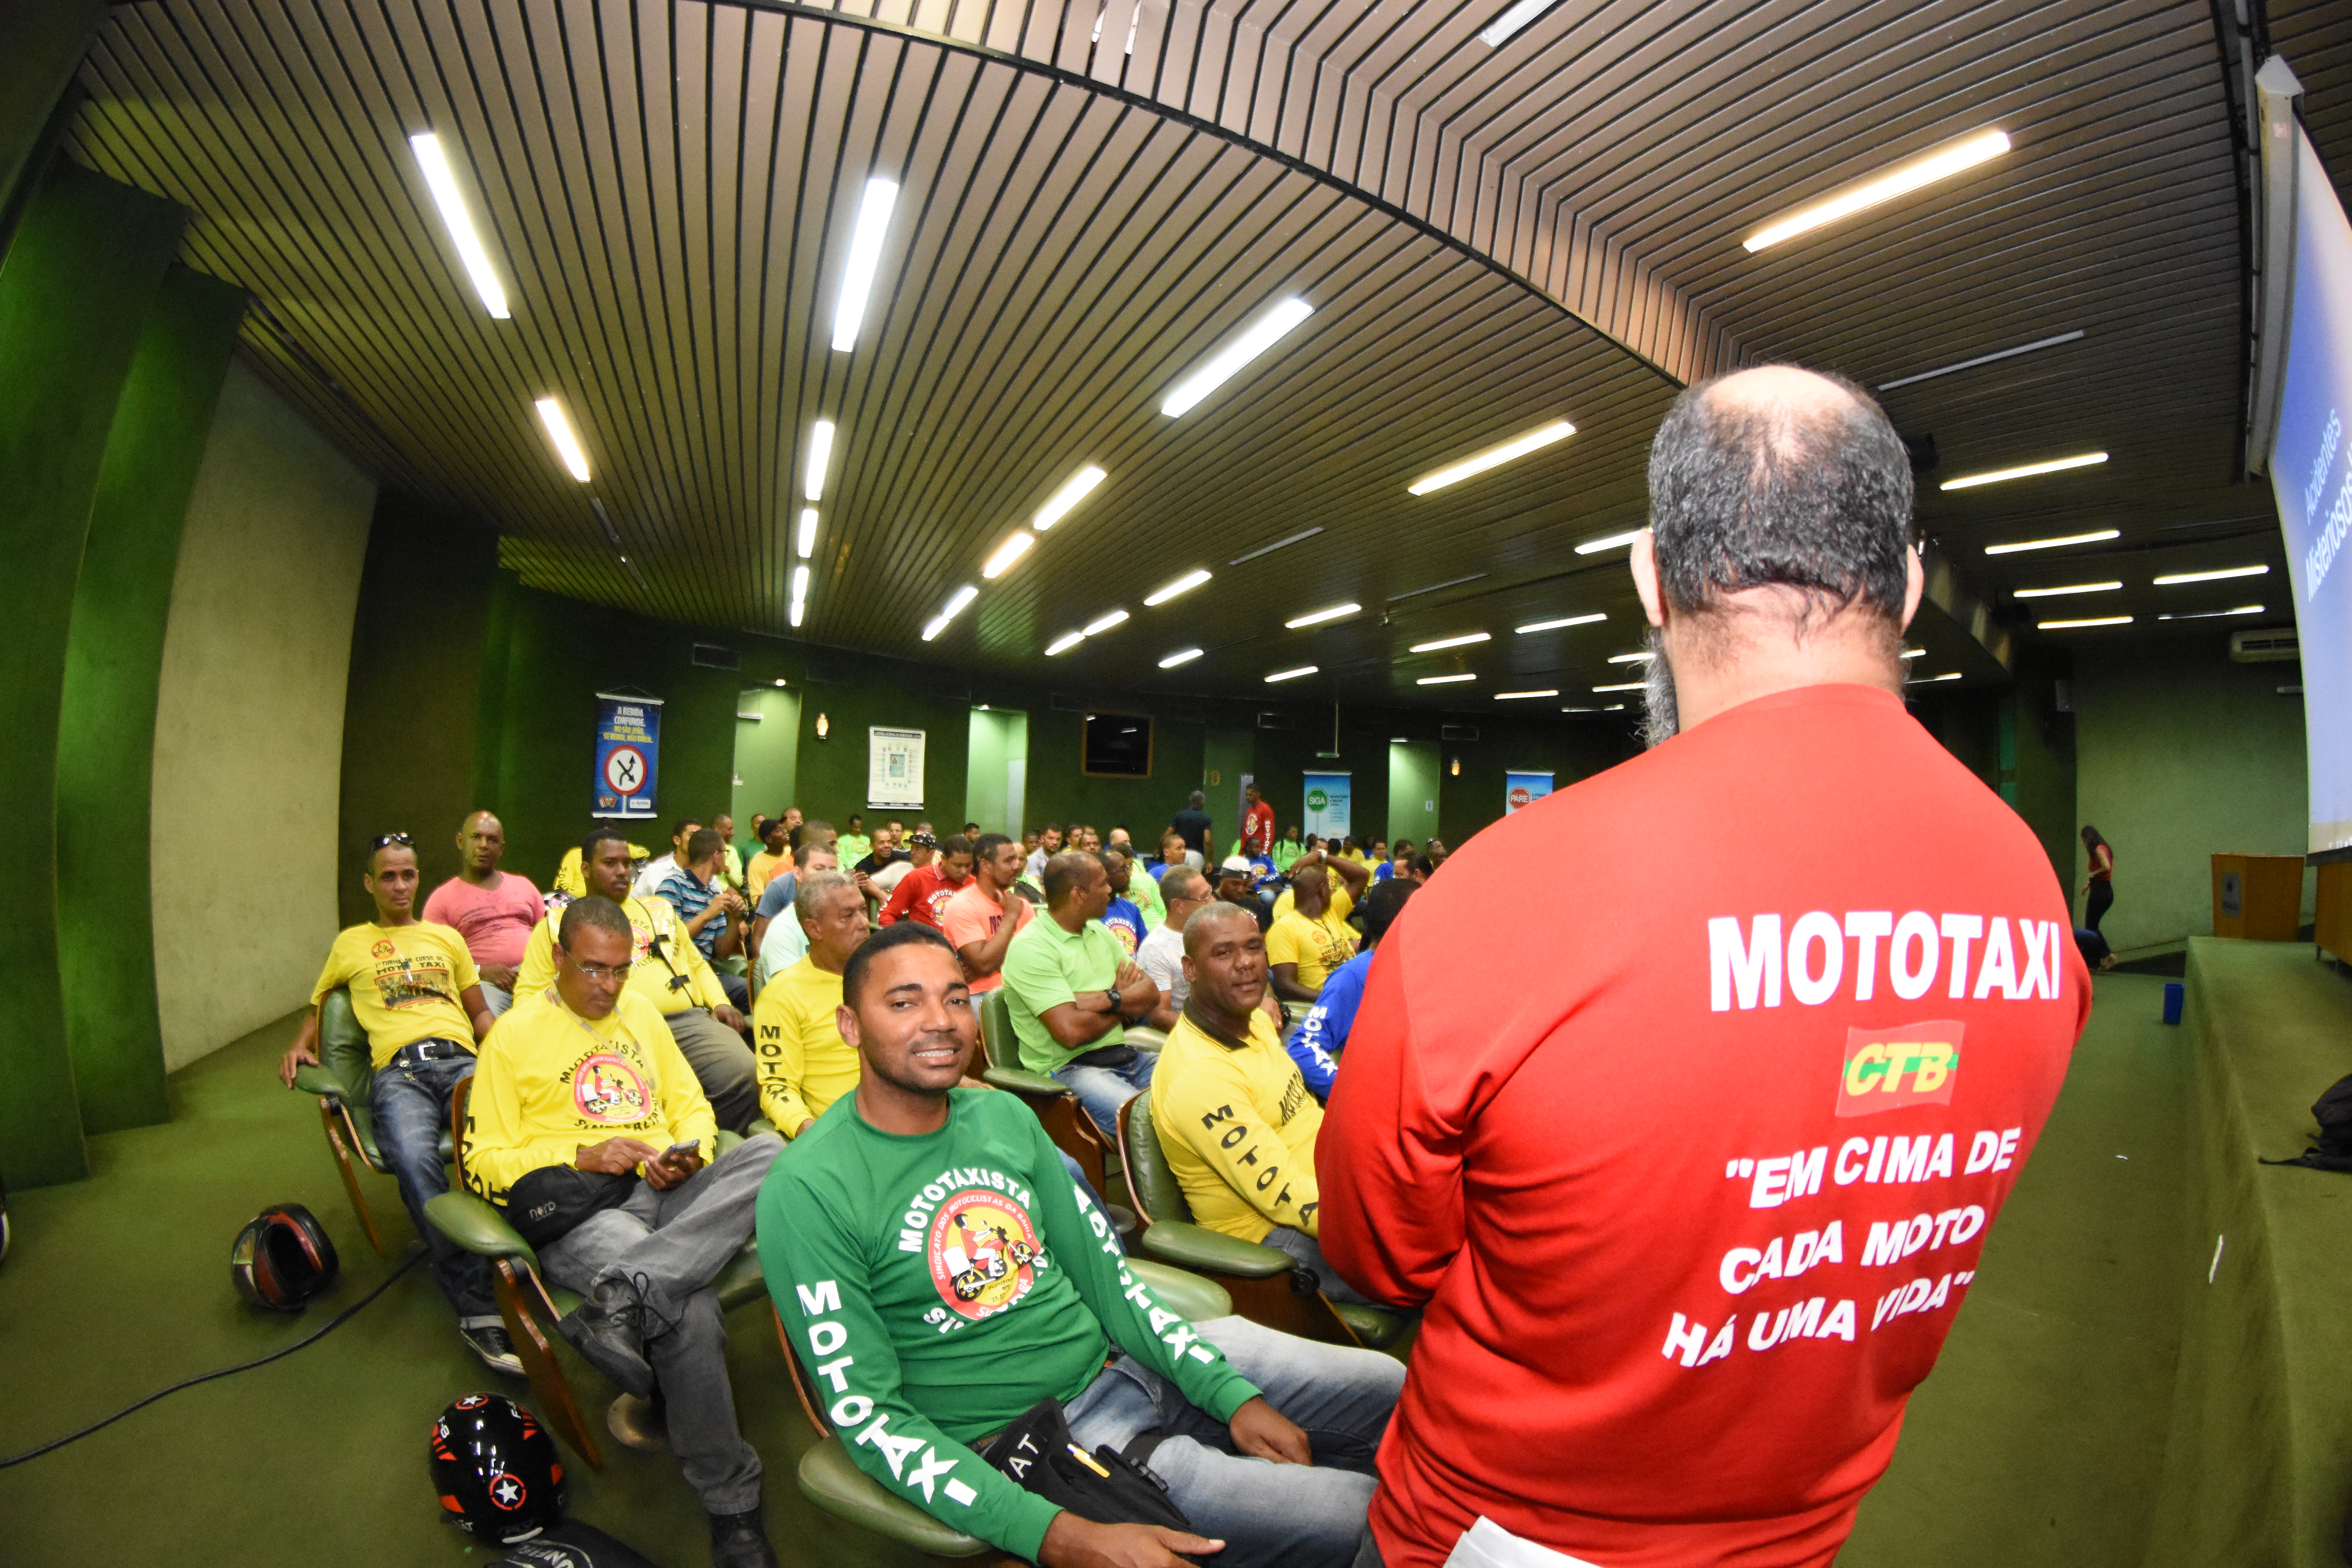 Escola oferece curso de capacitação para mototaxistas